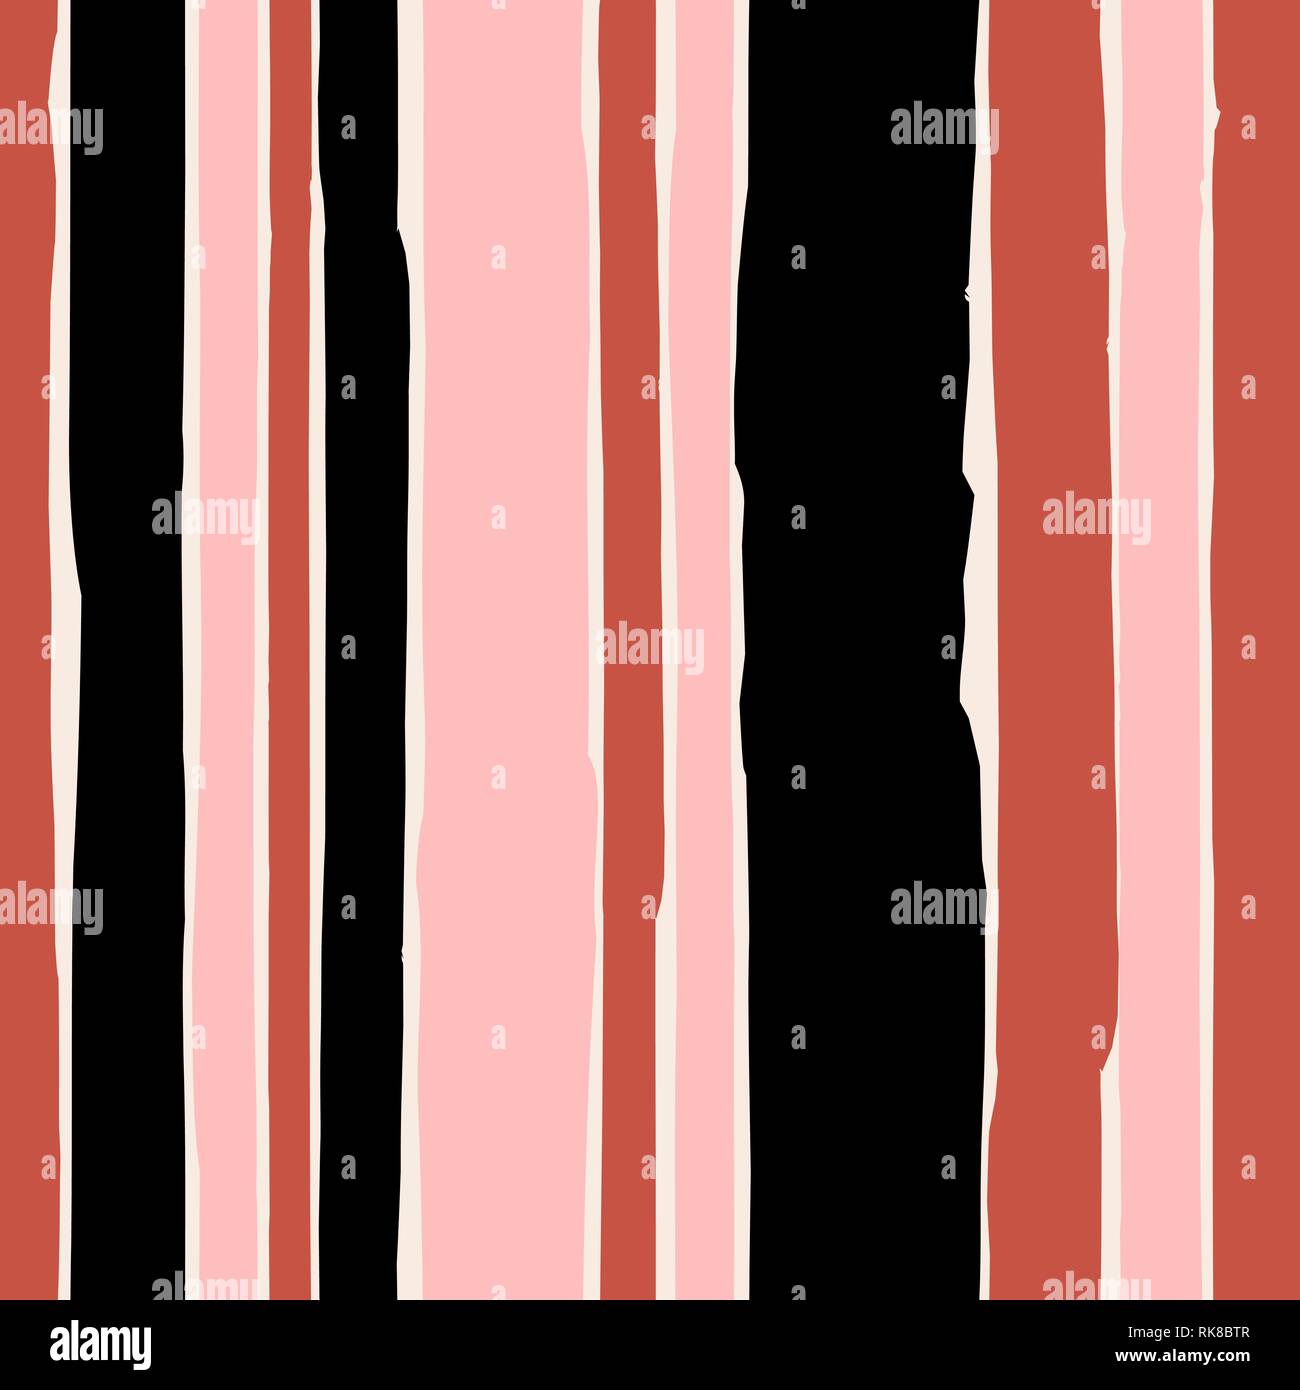 Seamless modello di ripetizione con strisce verticali in rosa pastello, nero e rosso mattone su sfondo color crema. Illustrazione Vettoriale